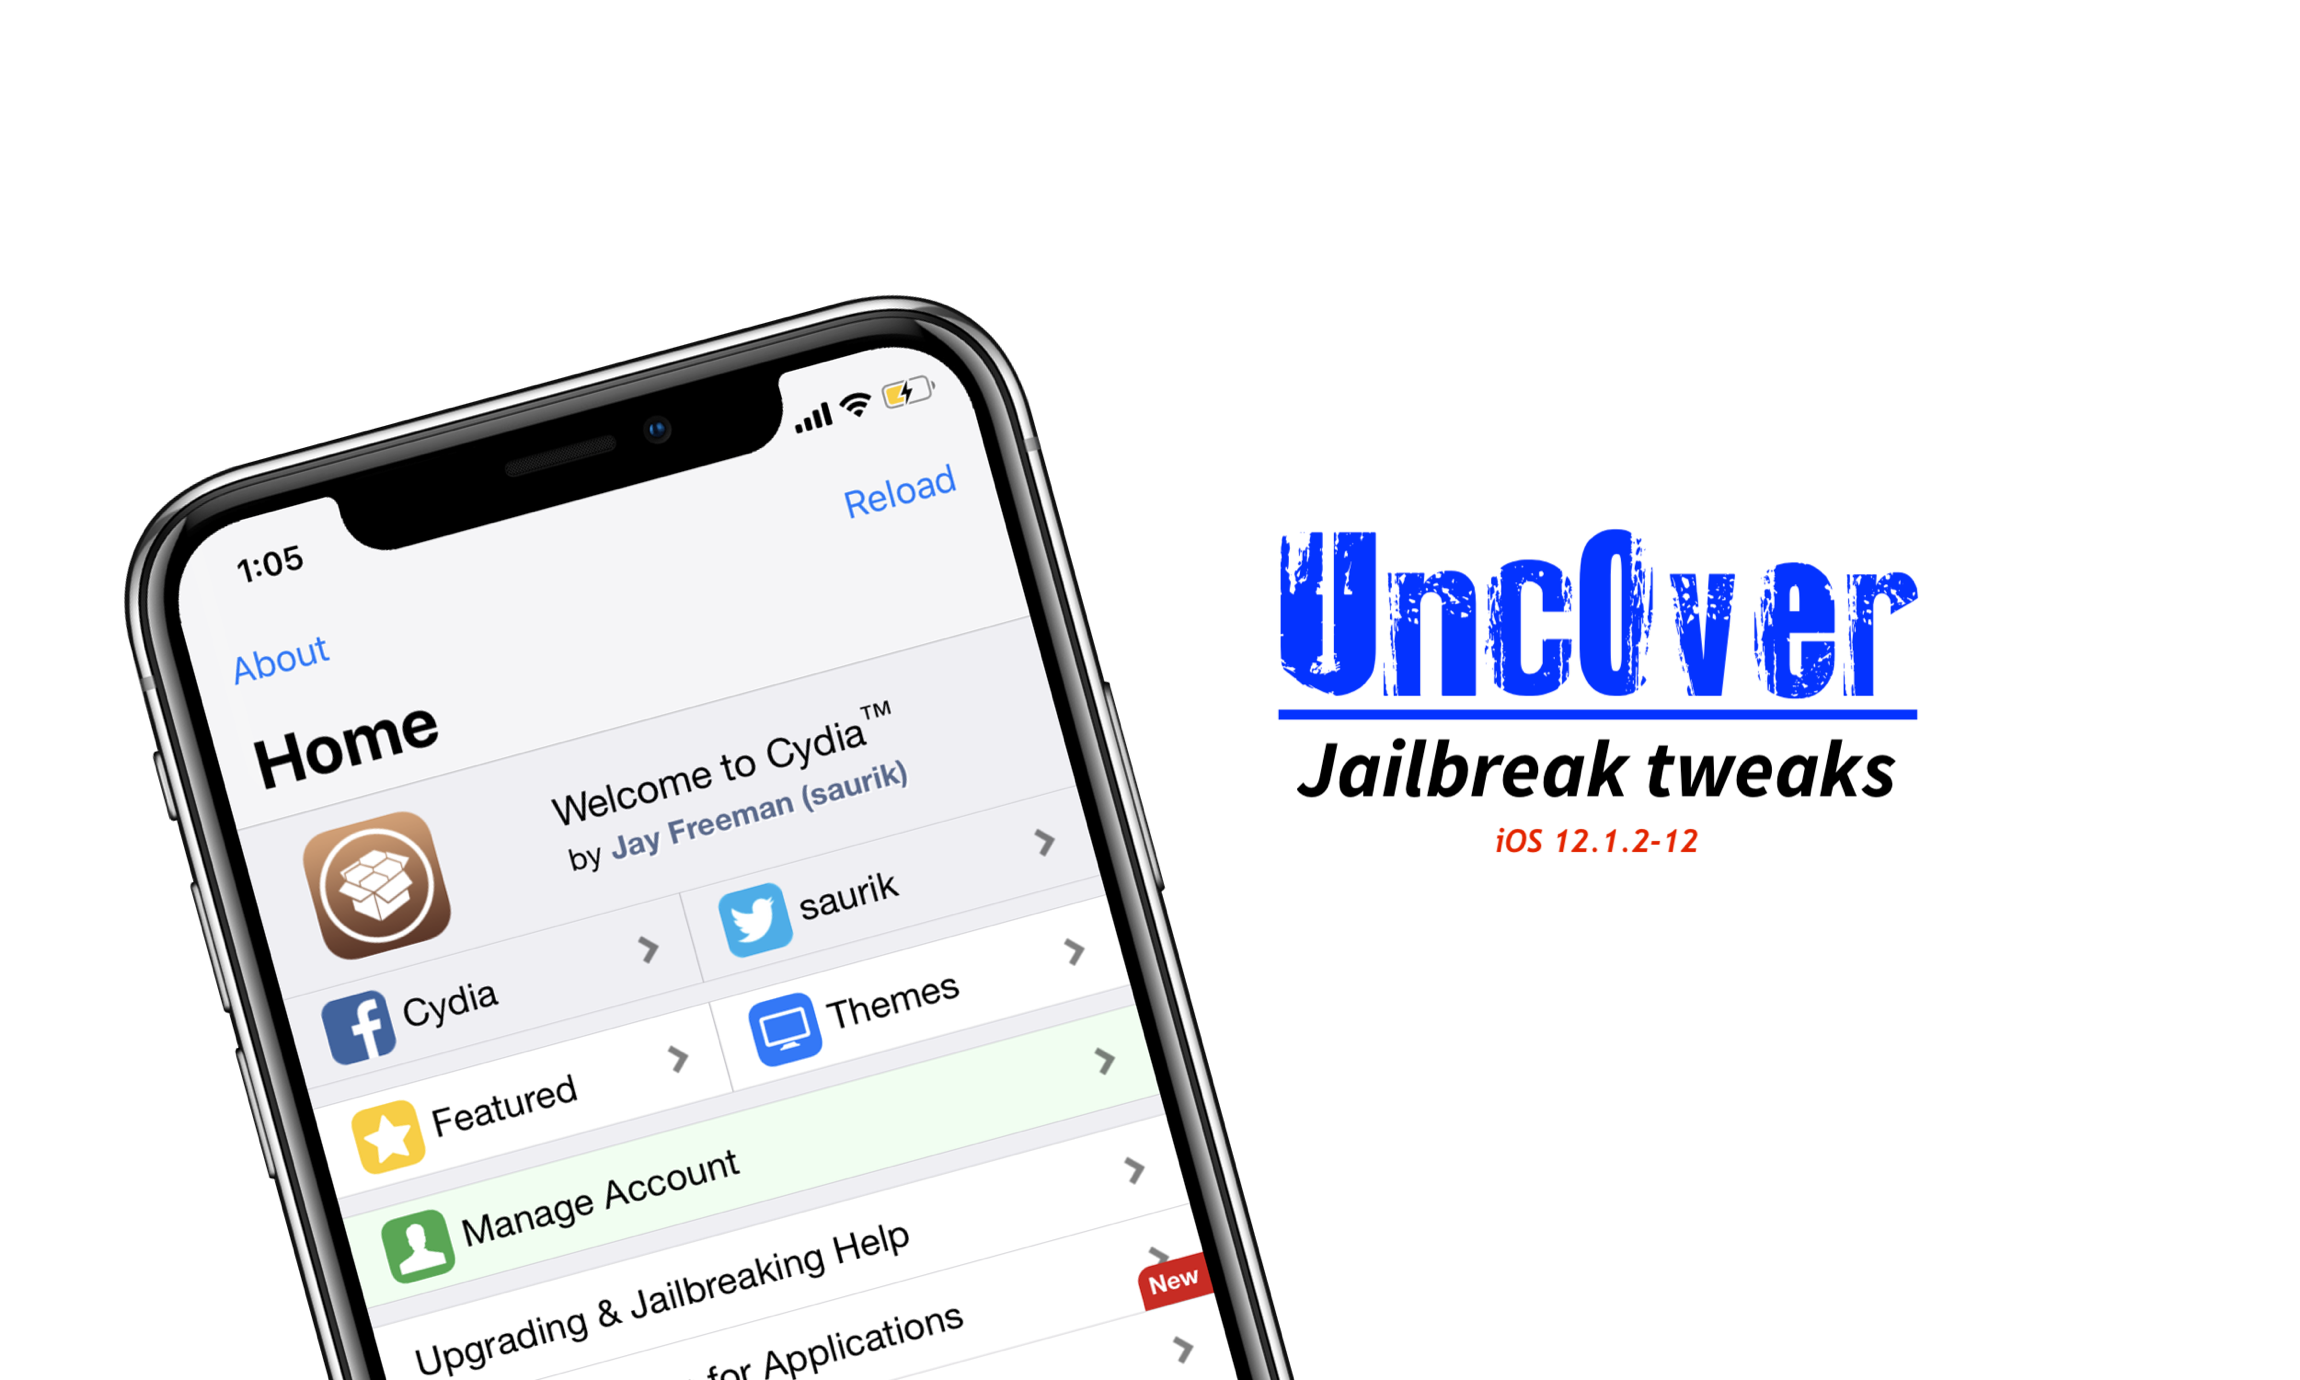 Unc0ver-jailbreak-tweaks-ios-12